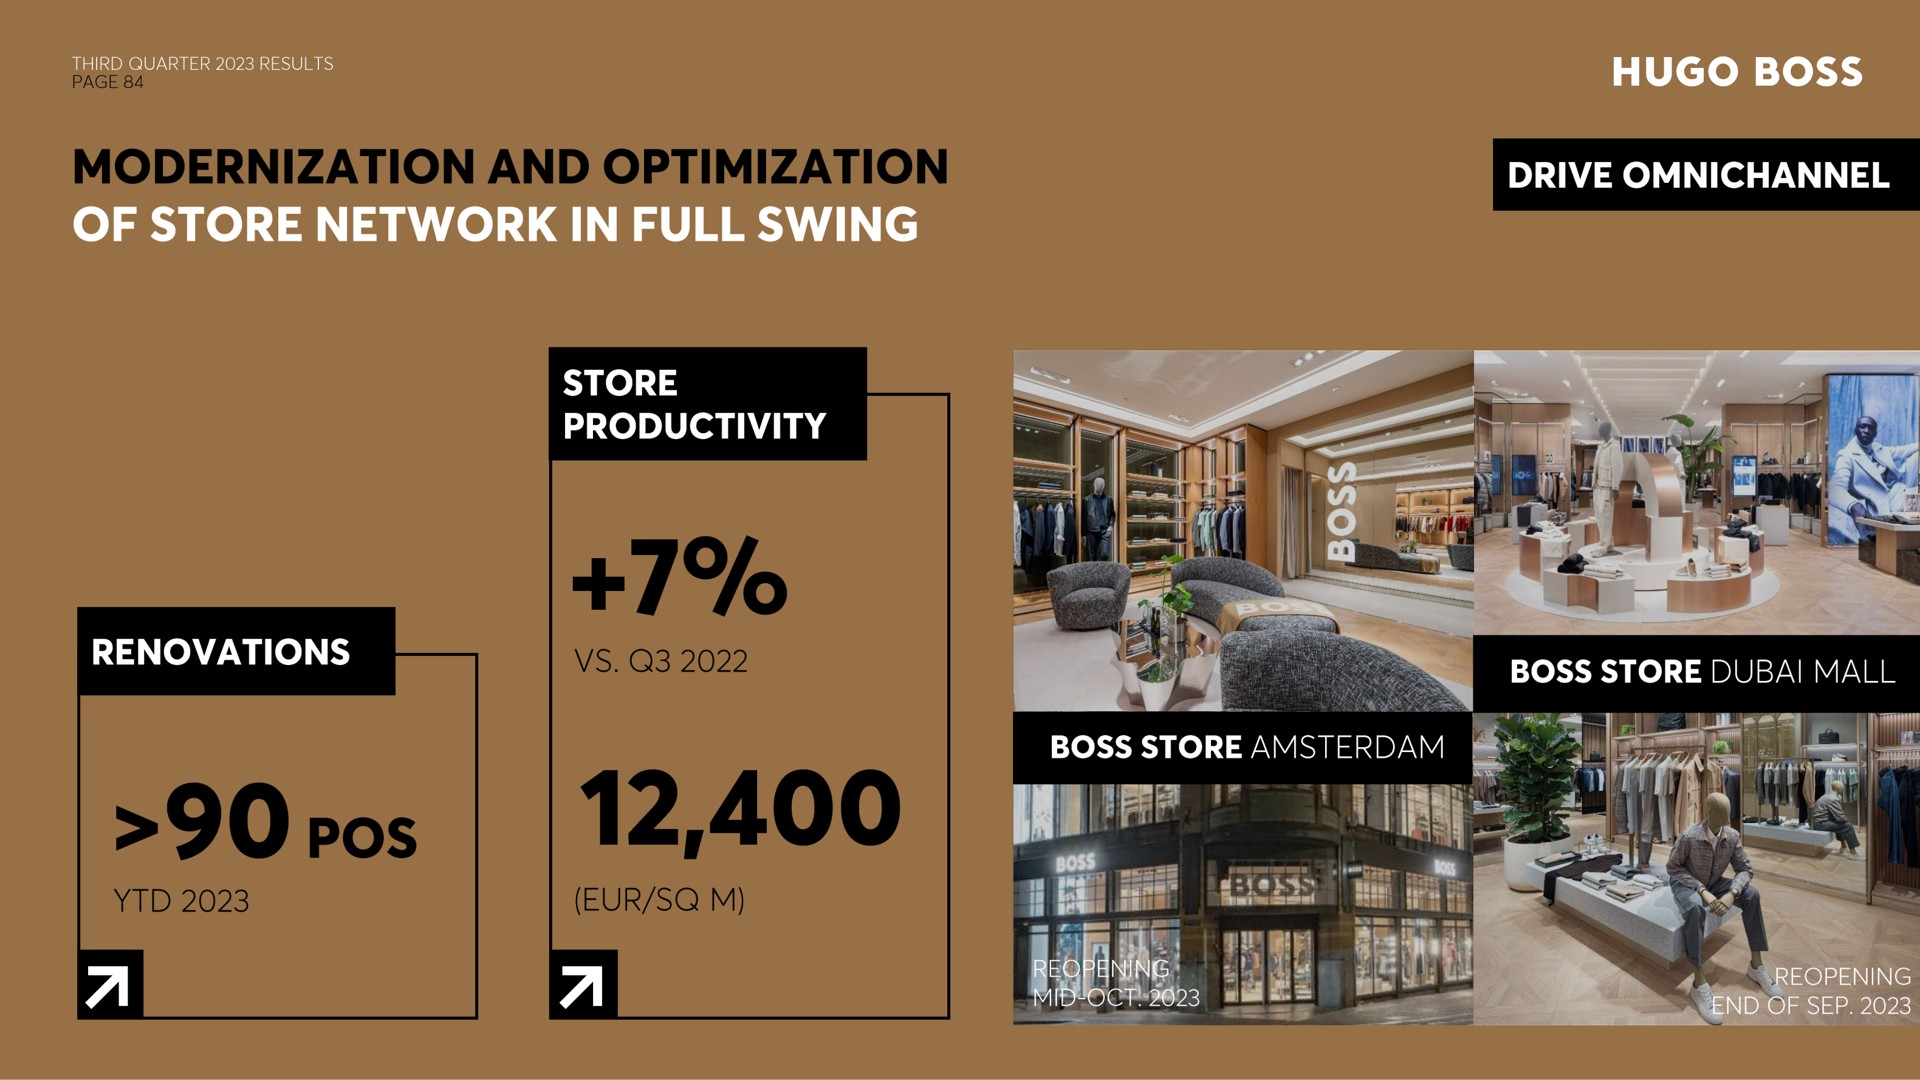 modernization and optimization store productivity renovations a i boss store mall | Hugo Boss